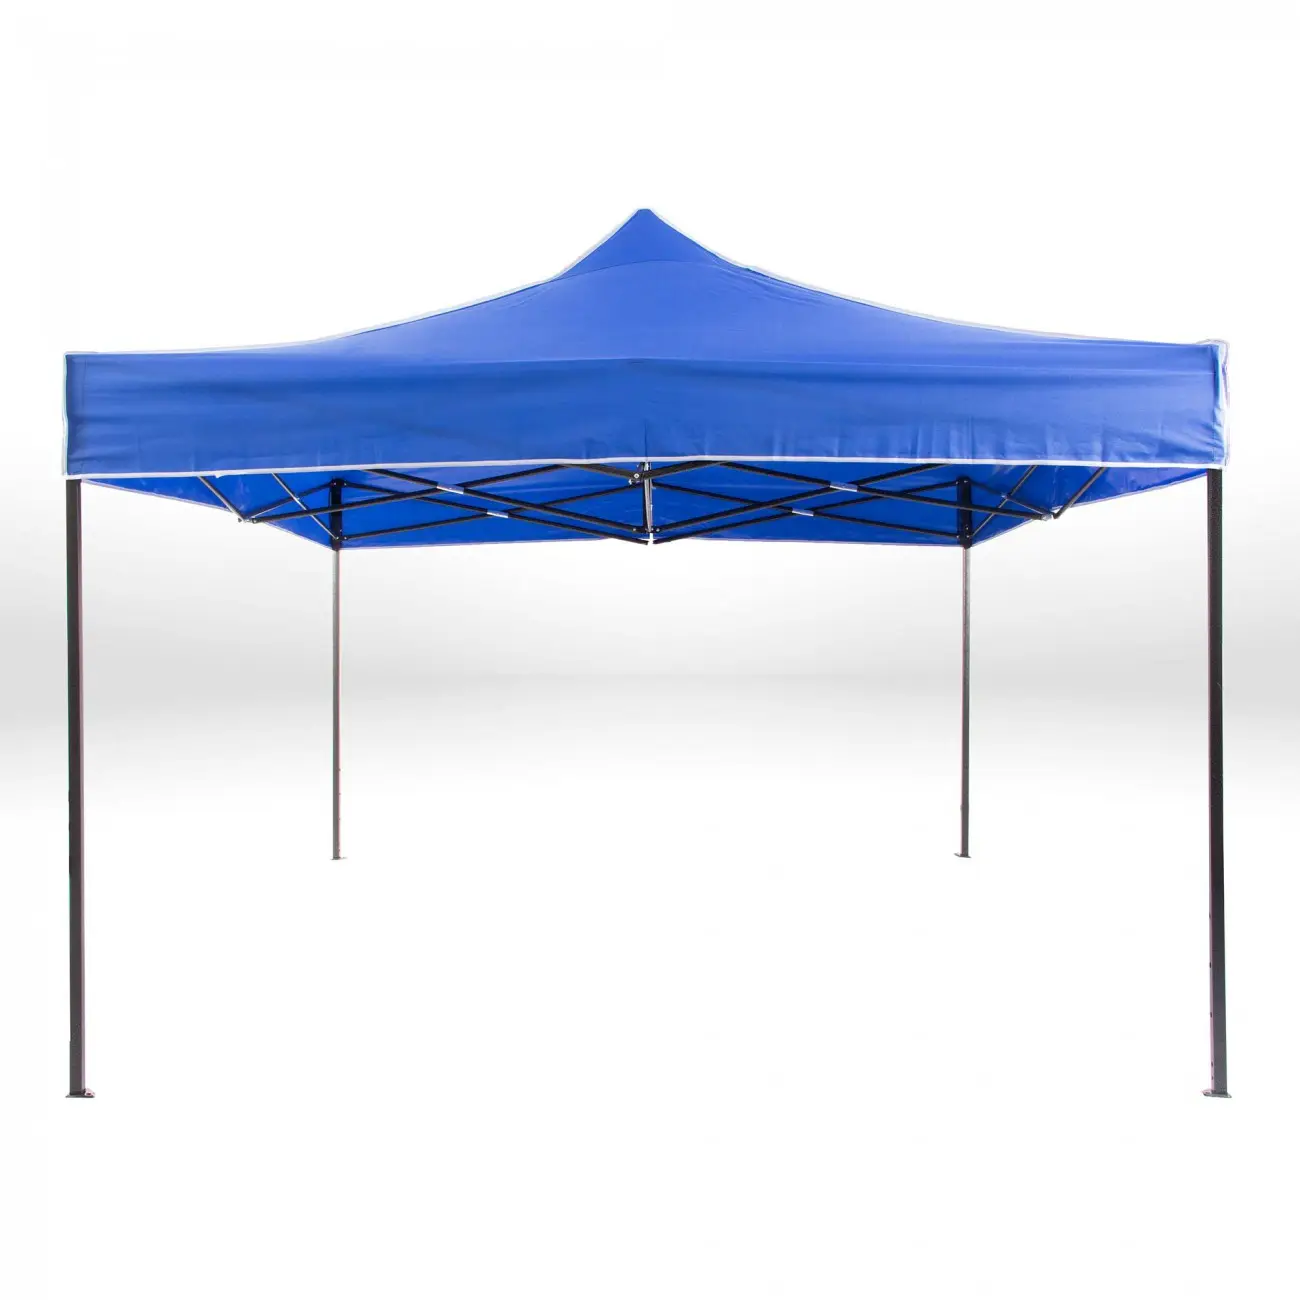 Gazebo tenda de varanda pop up 3x3 gazebos, tenda azul 3x3